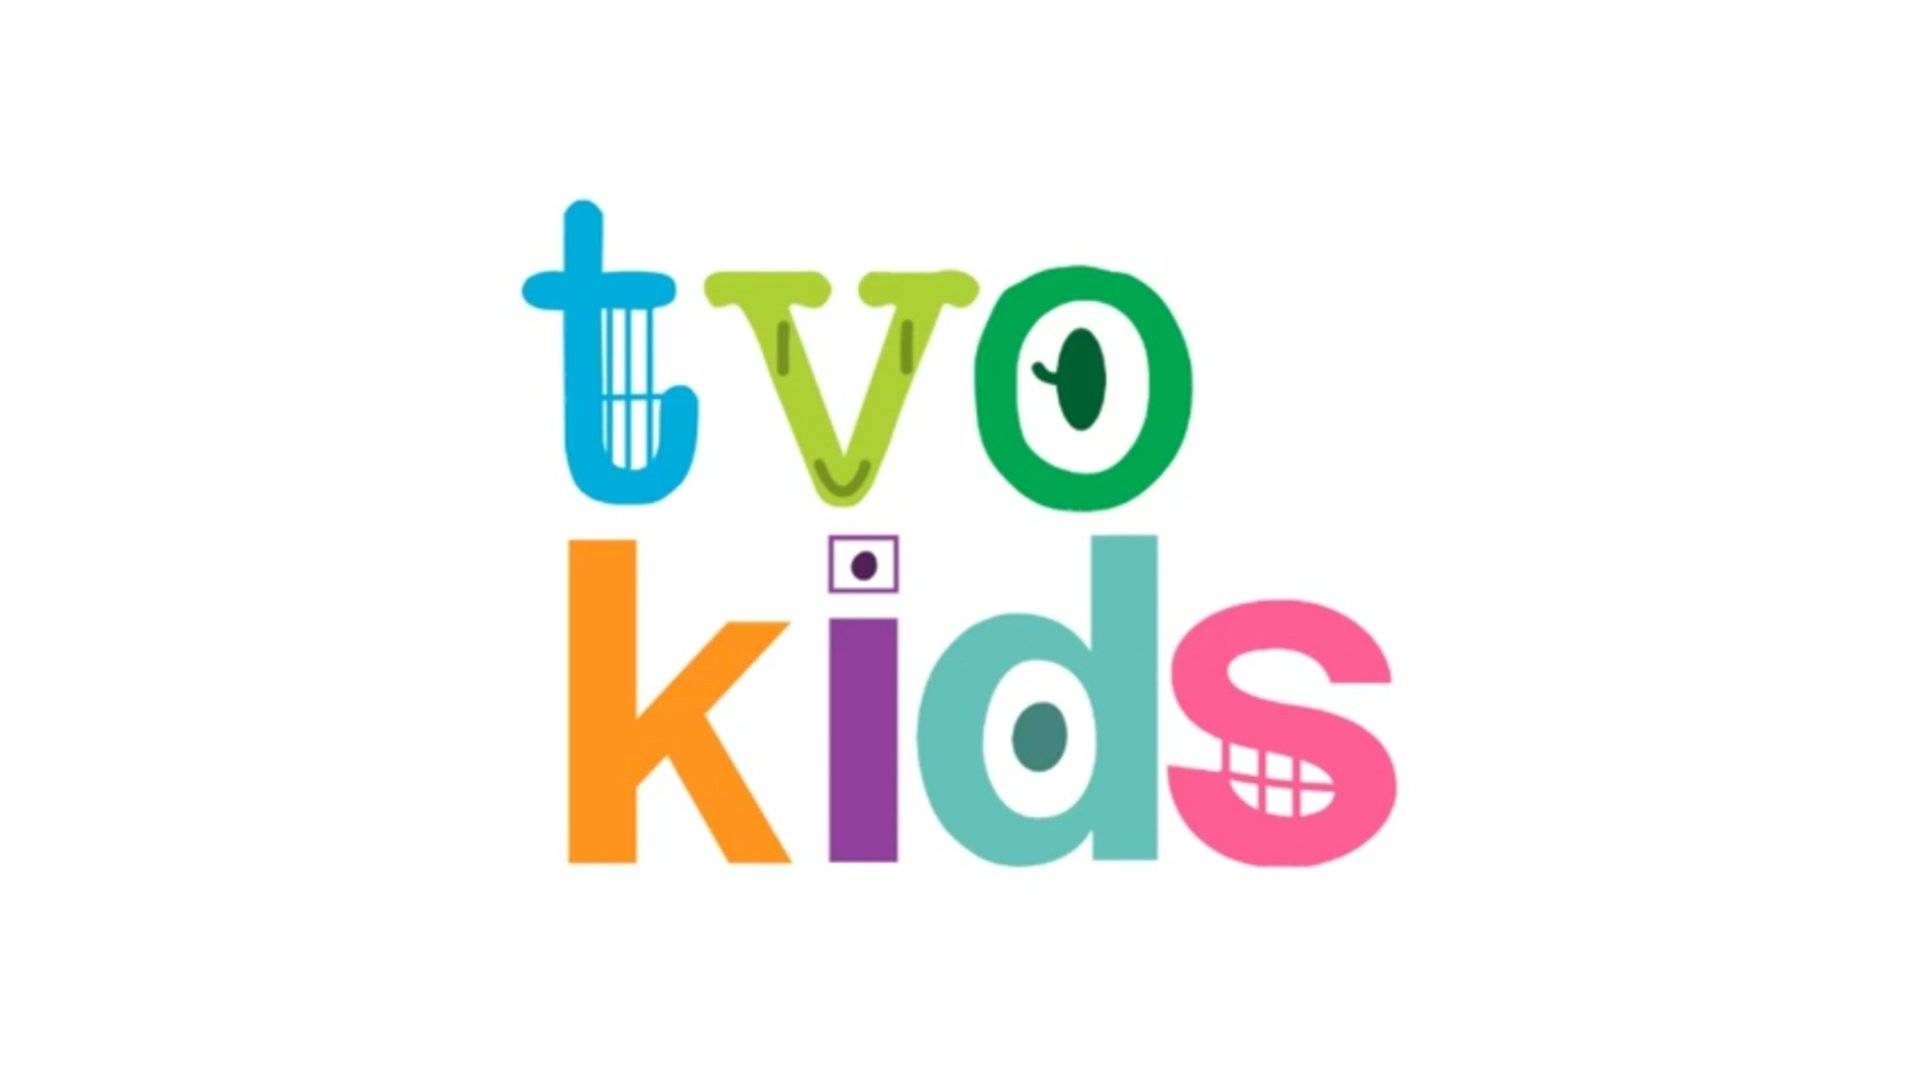 TVOKids Logo (David Loke JY's Version) by TheBobby65 on DeviantArt